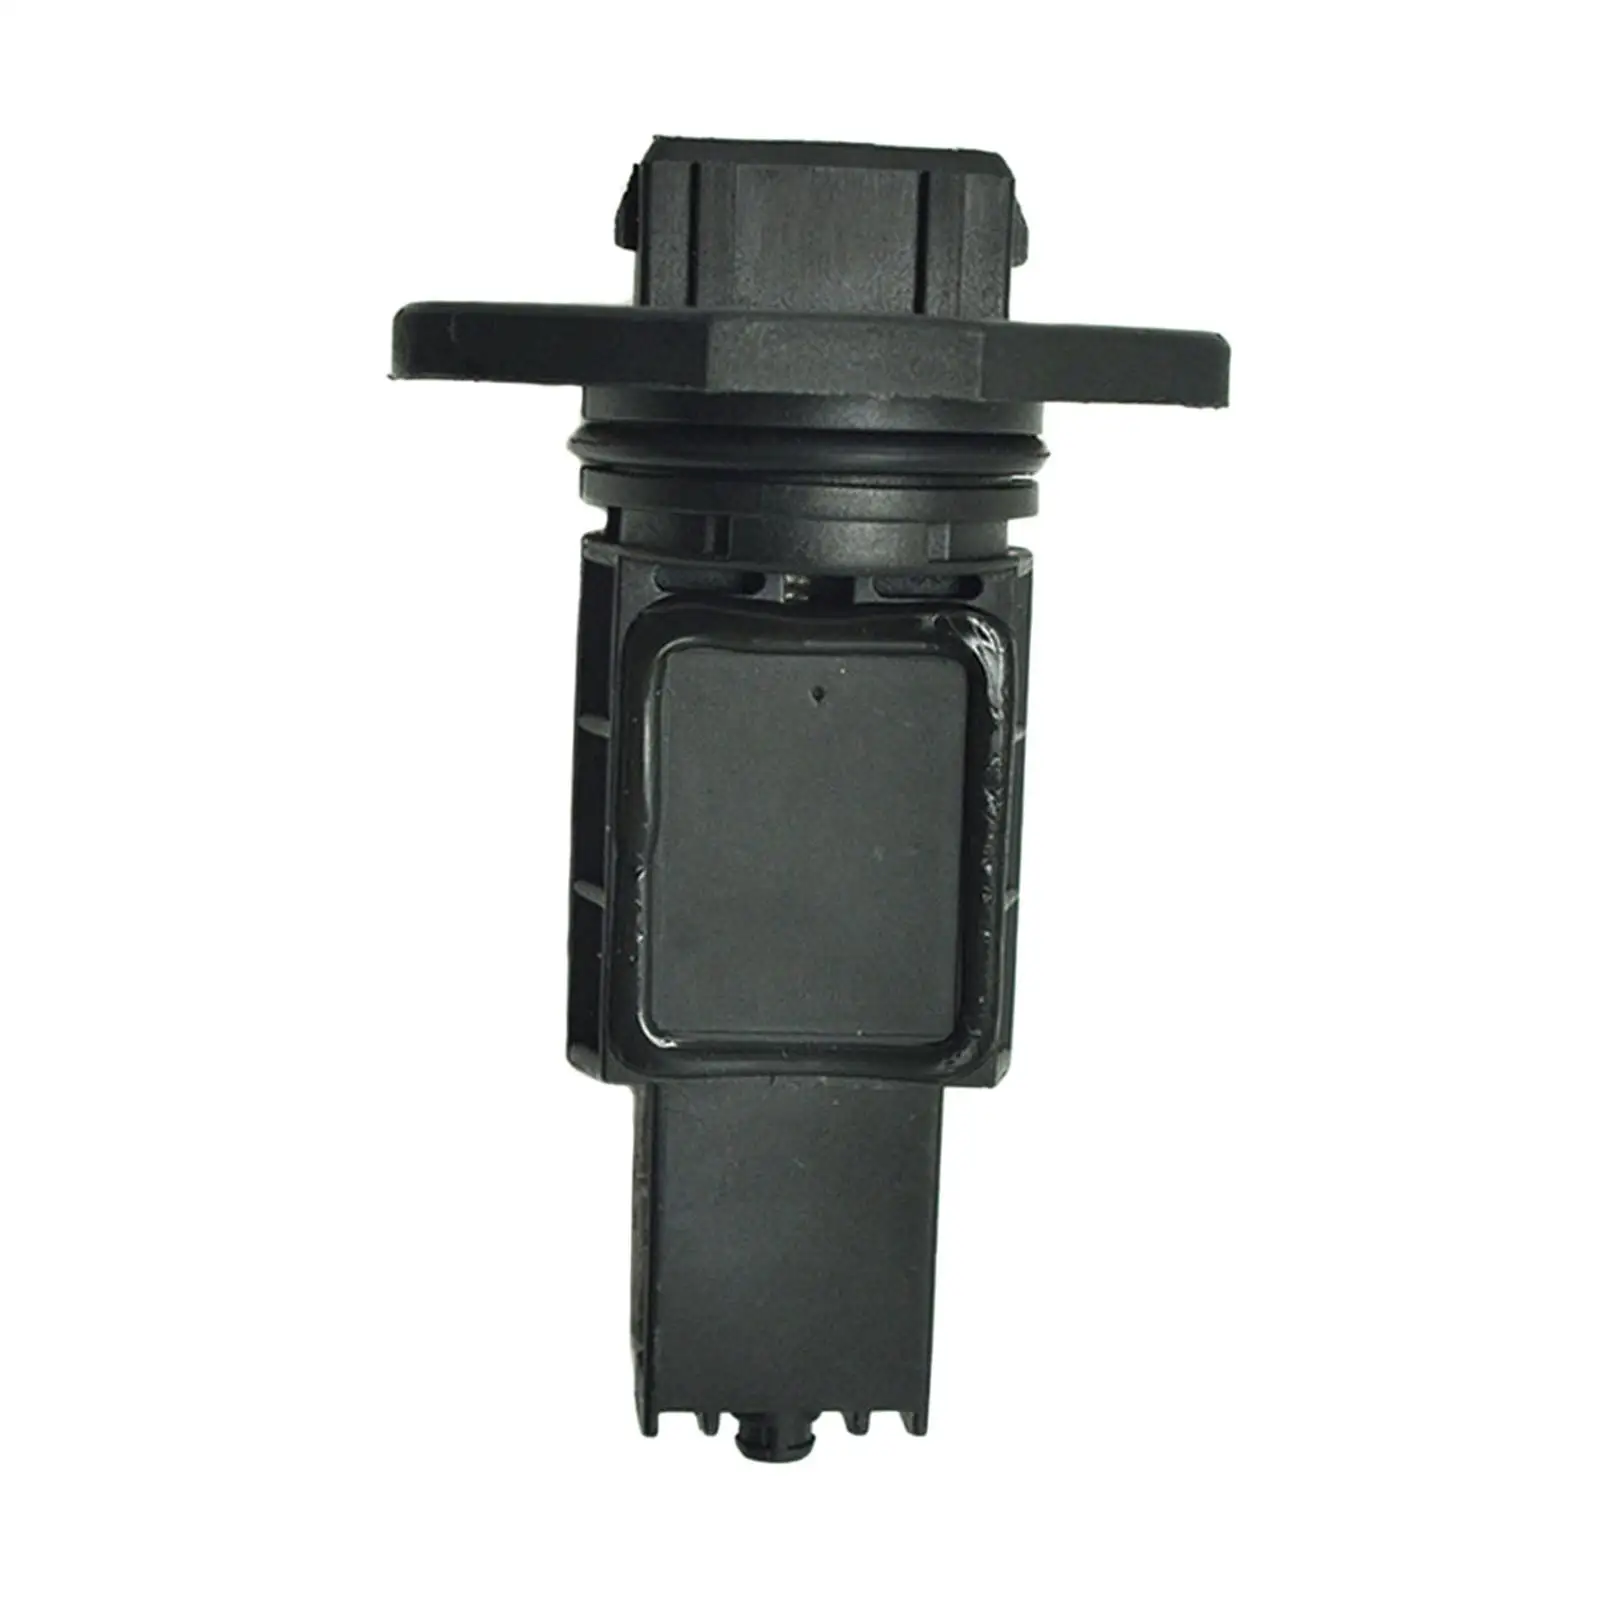 Mass Air Flow Sensor Car Supplies Replacement Parts Plastic Vehicle Parts Black Maf, for Audi A8 0280217804, 077133471D